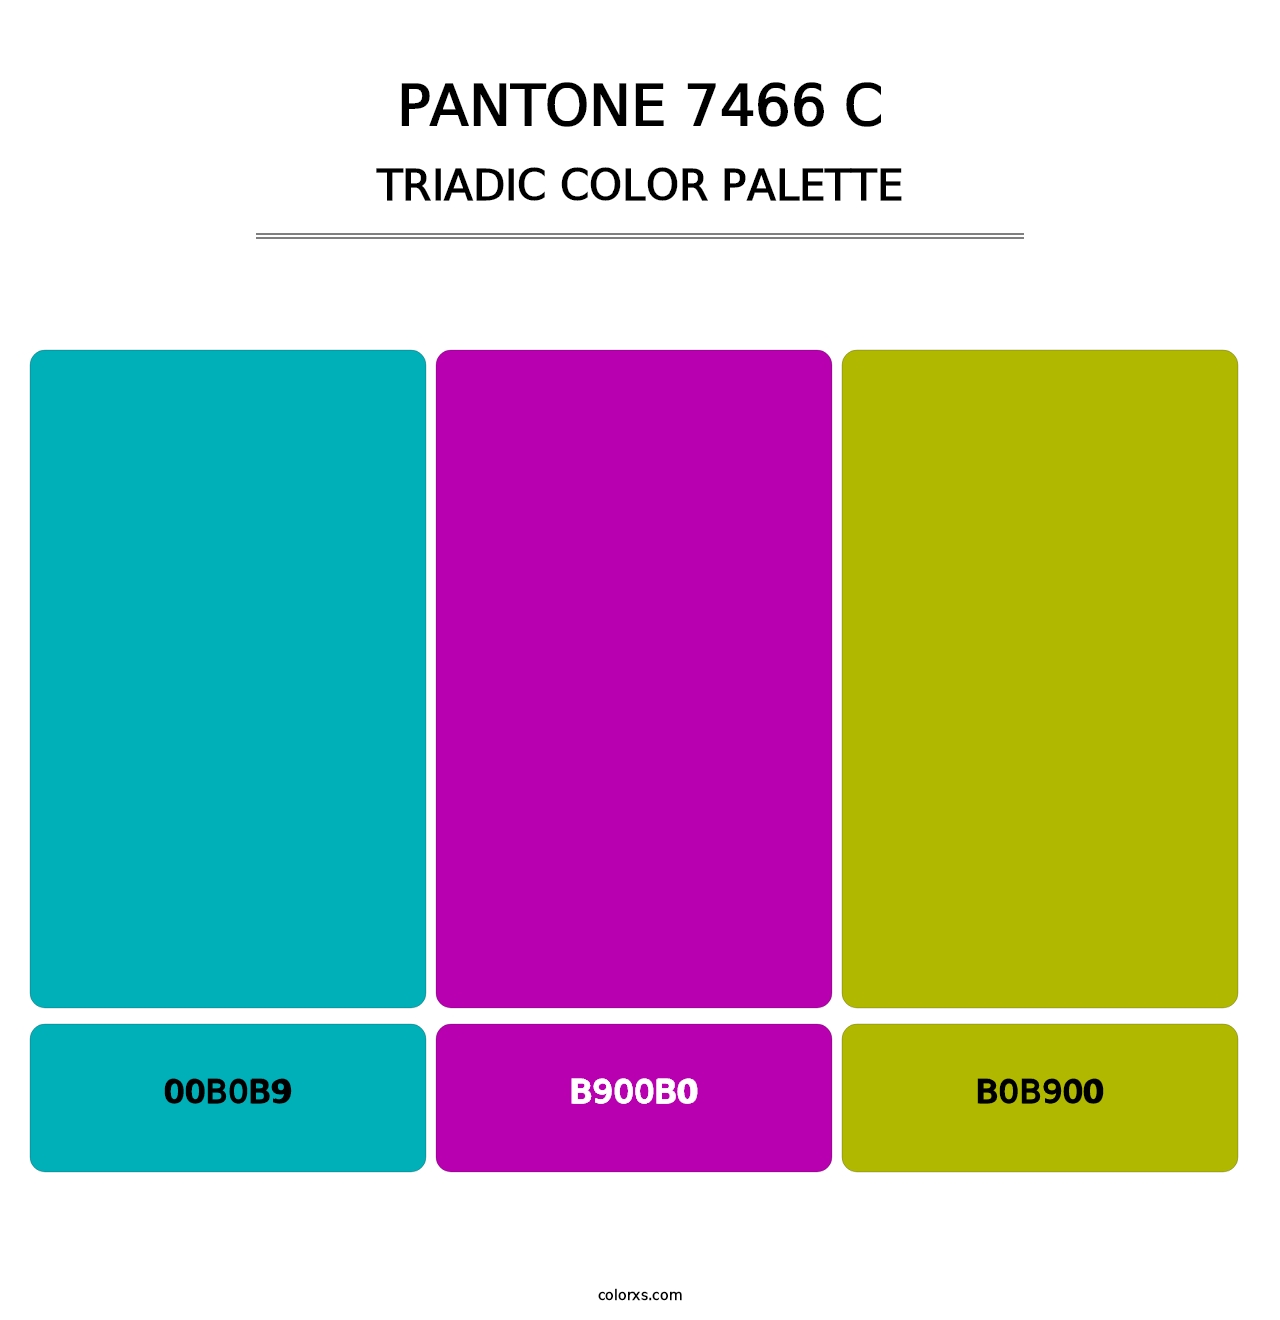 PANTONE 7466 C - Triadic Color Palette